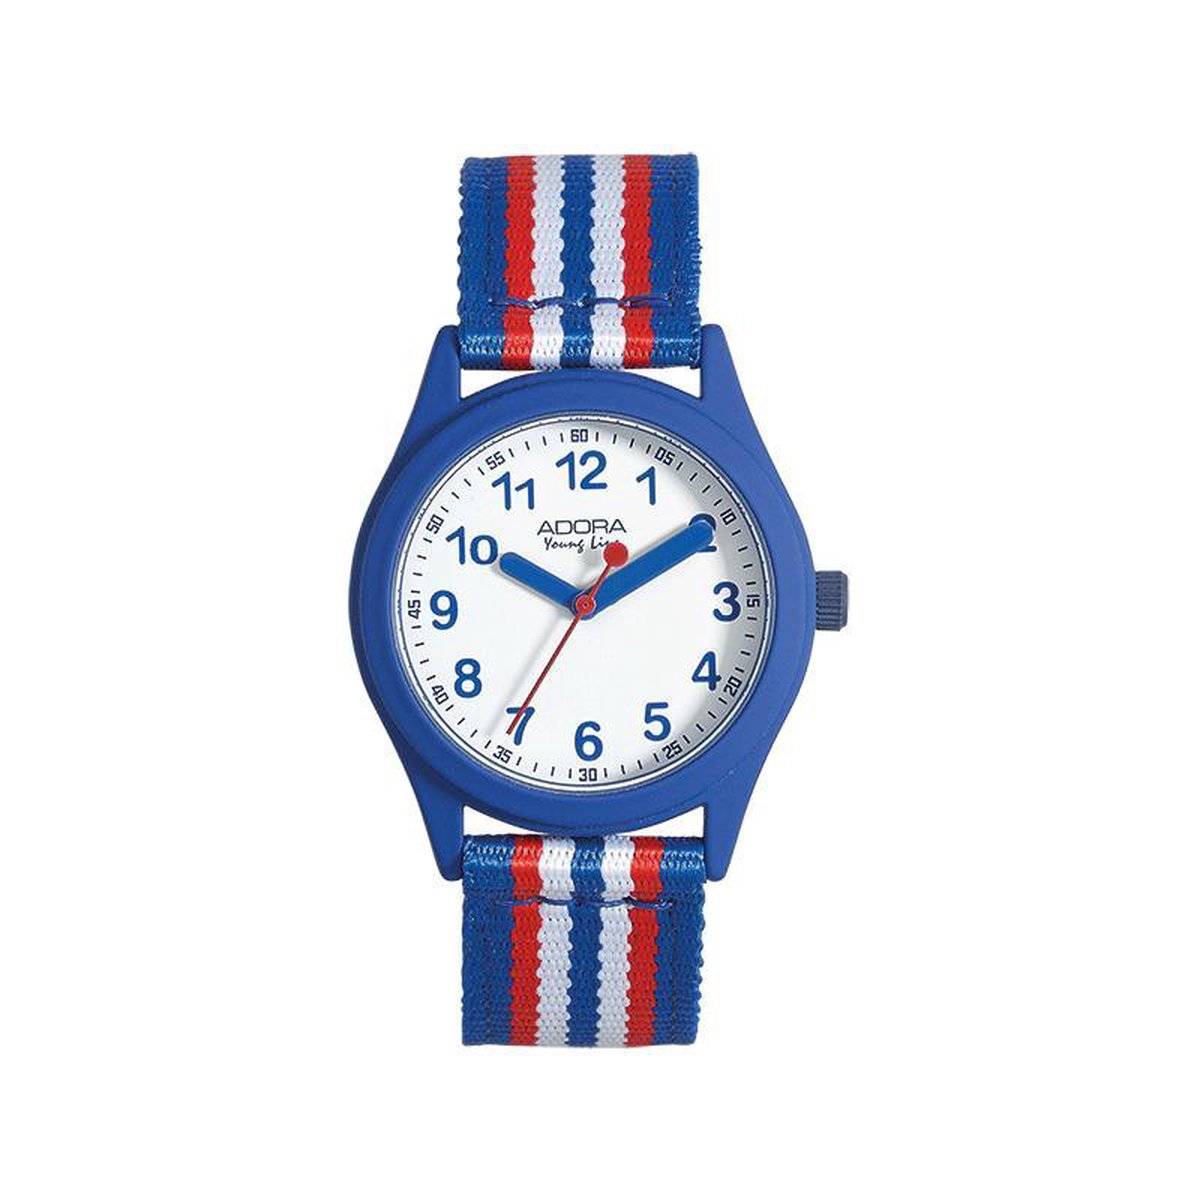 Leuke jongens horloge van het merk adora-A4387